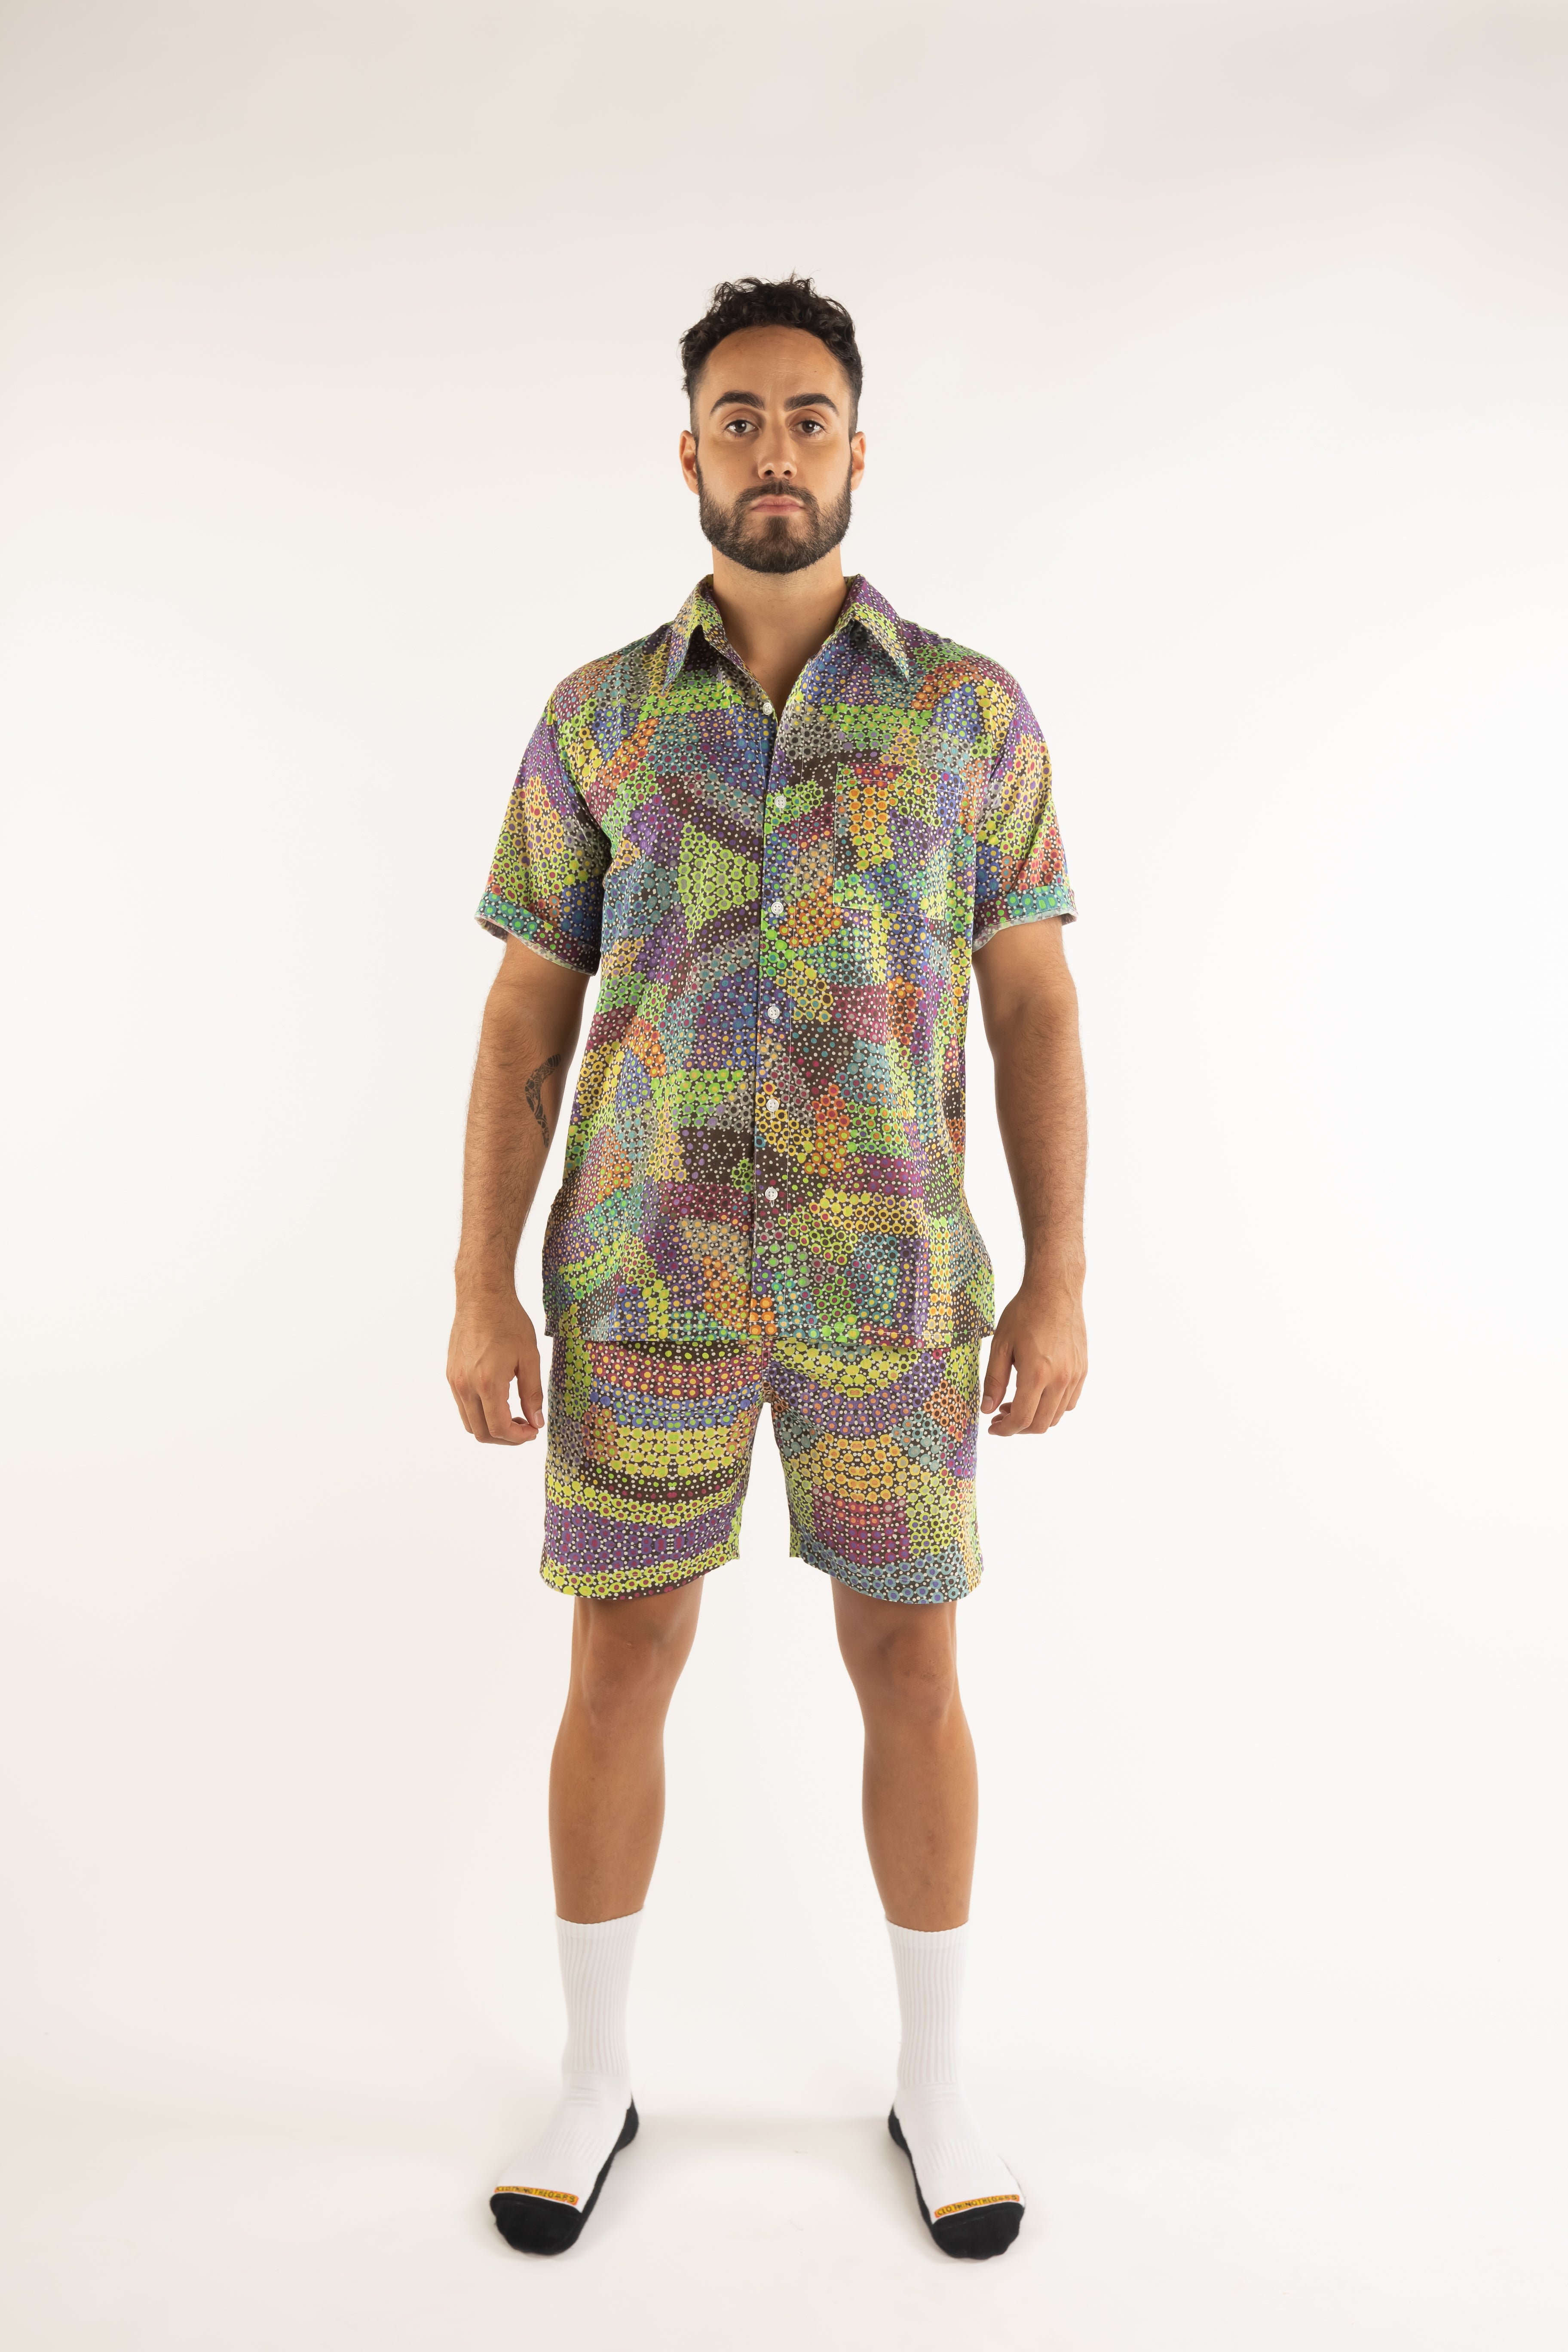 Max Short Sleeve Men's Shirt - Pilbara Wildflowers